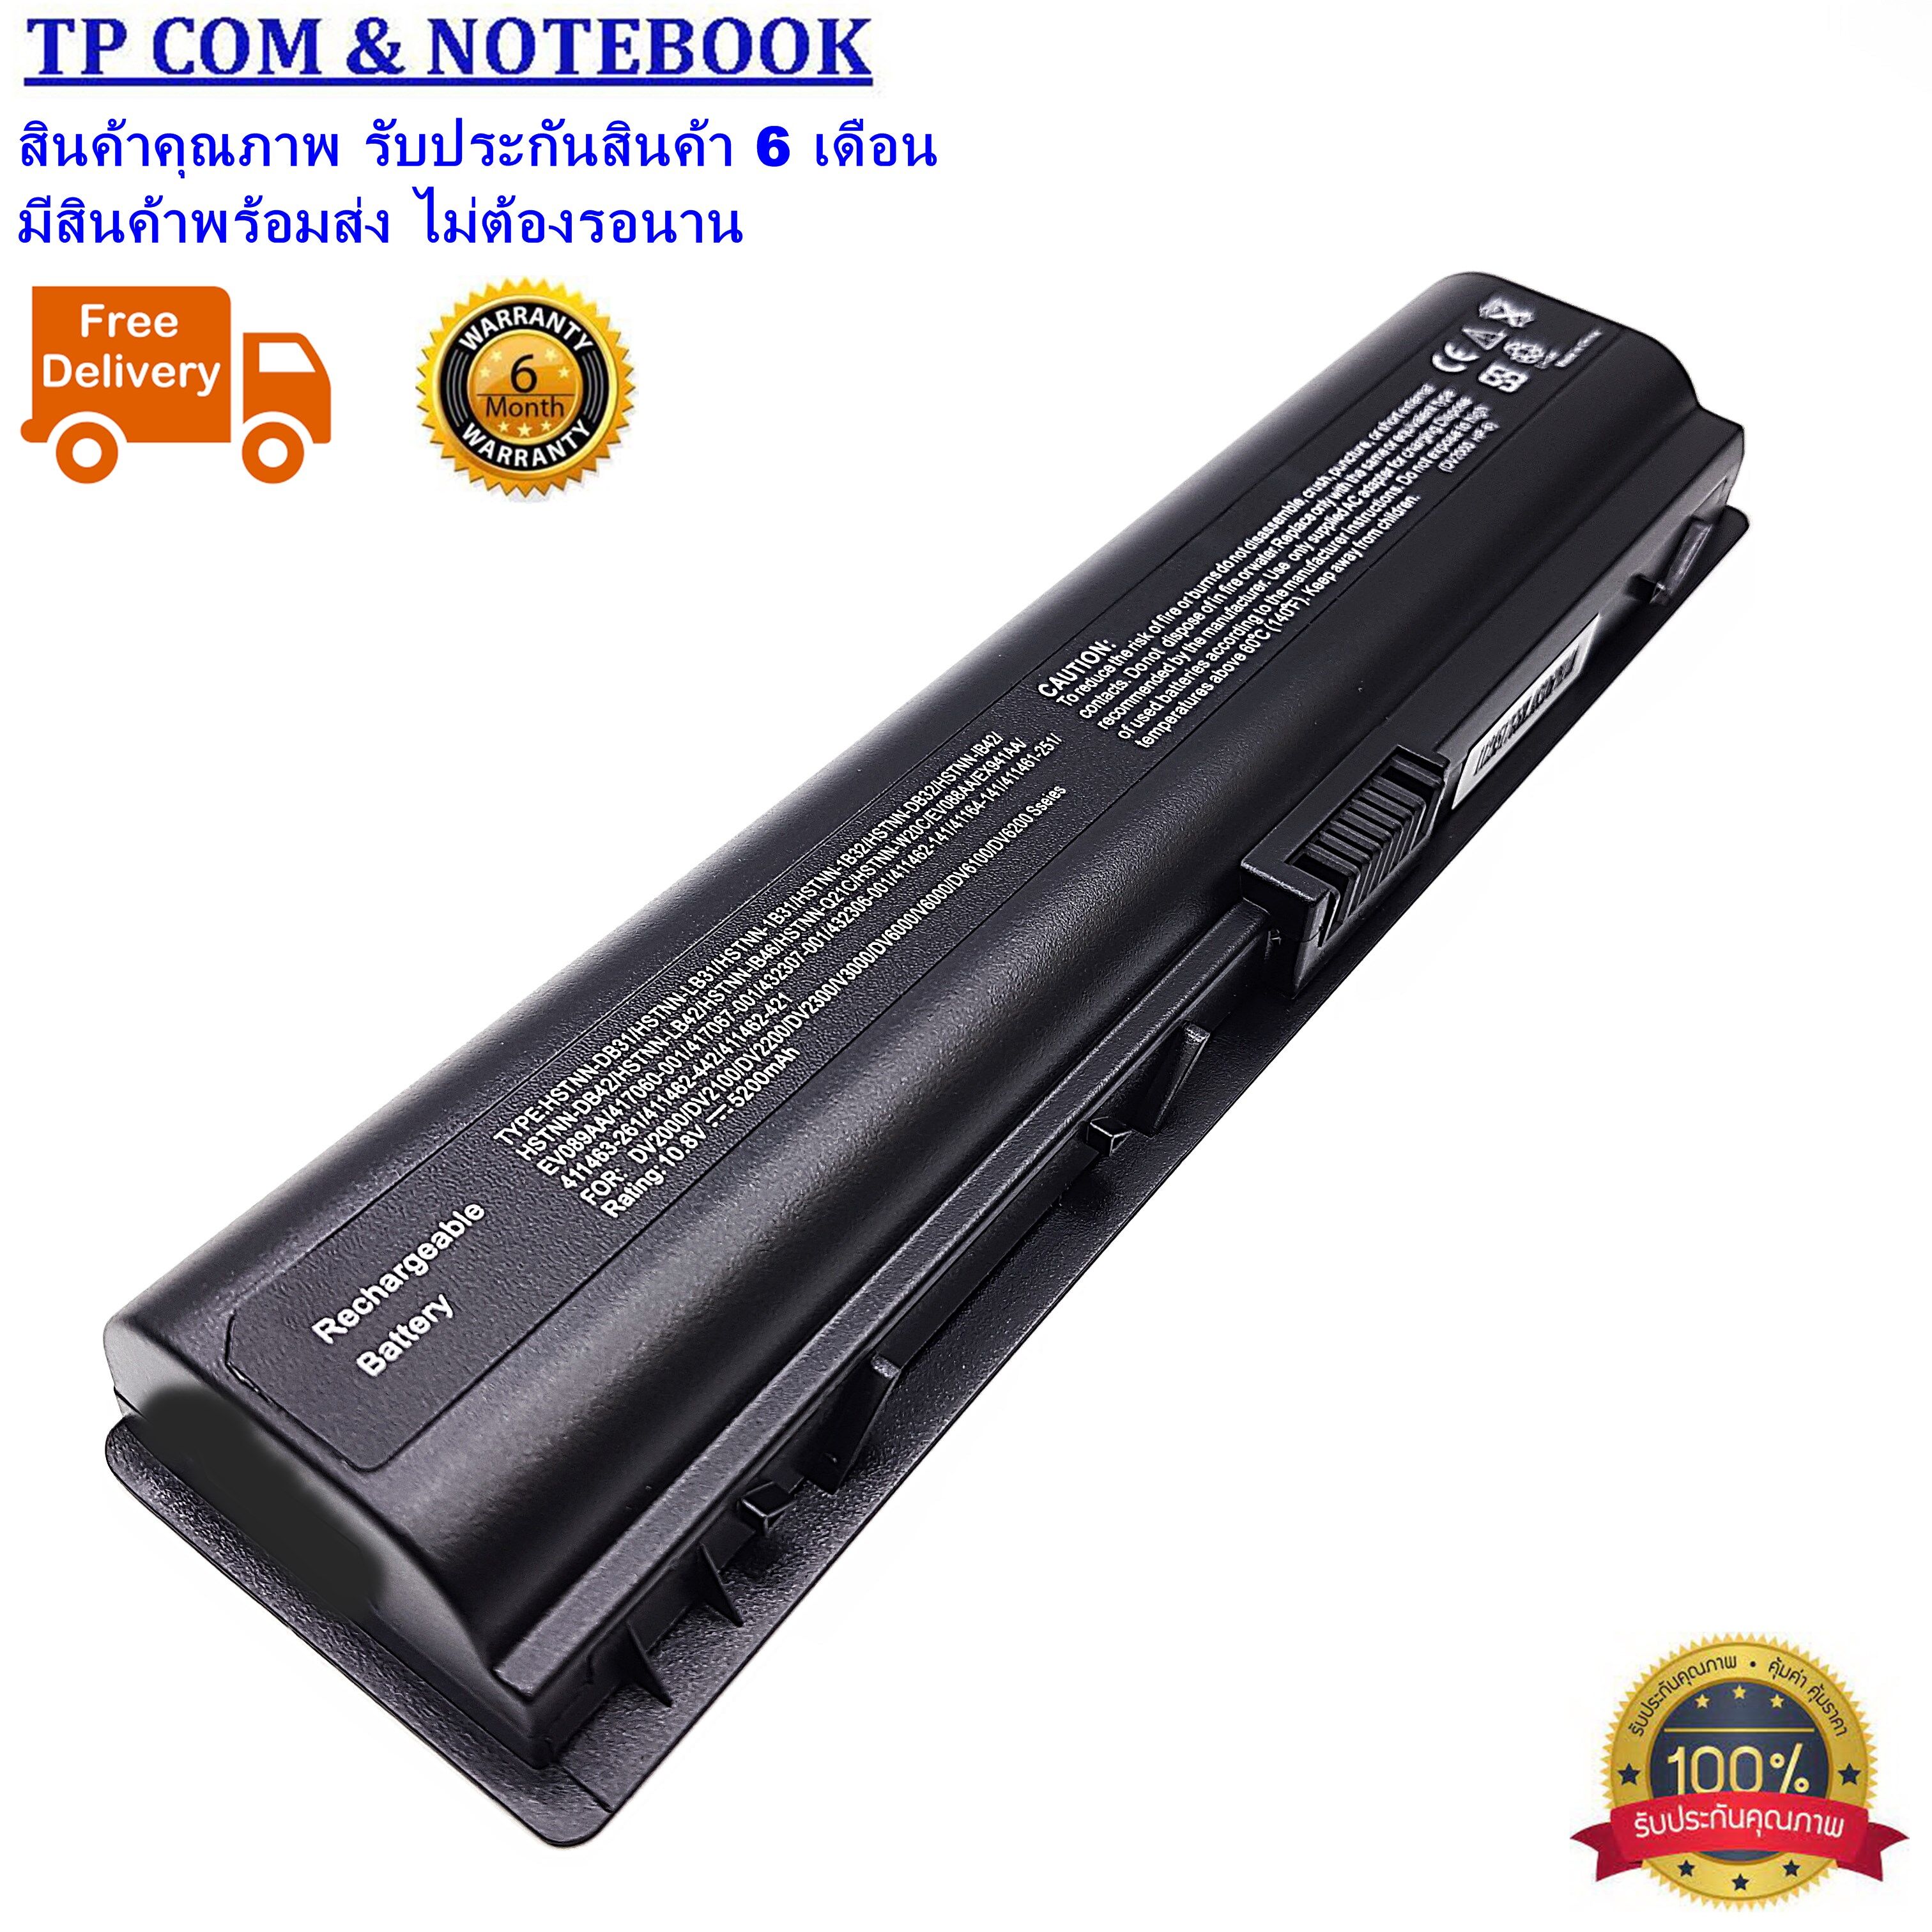 Battery HP DV2000 DV6000 Compaq V3000 V3700 V6000 C700  แบตเตอรี่โน๊ตบุ๊ค เอชพี-คอมแพค (ของเทียบ OEM) Battery Notebook HP-COMPAQ